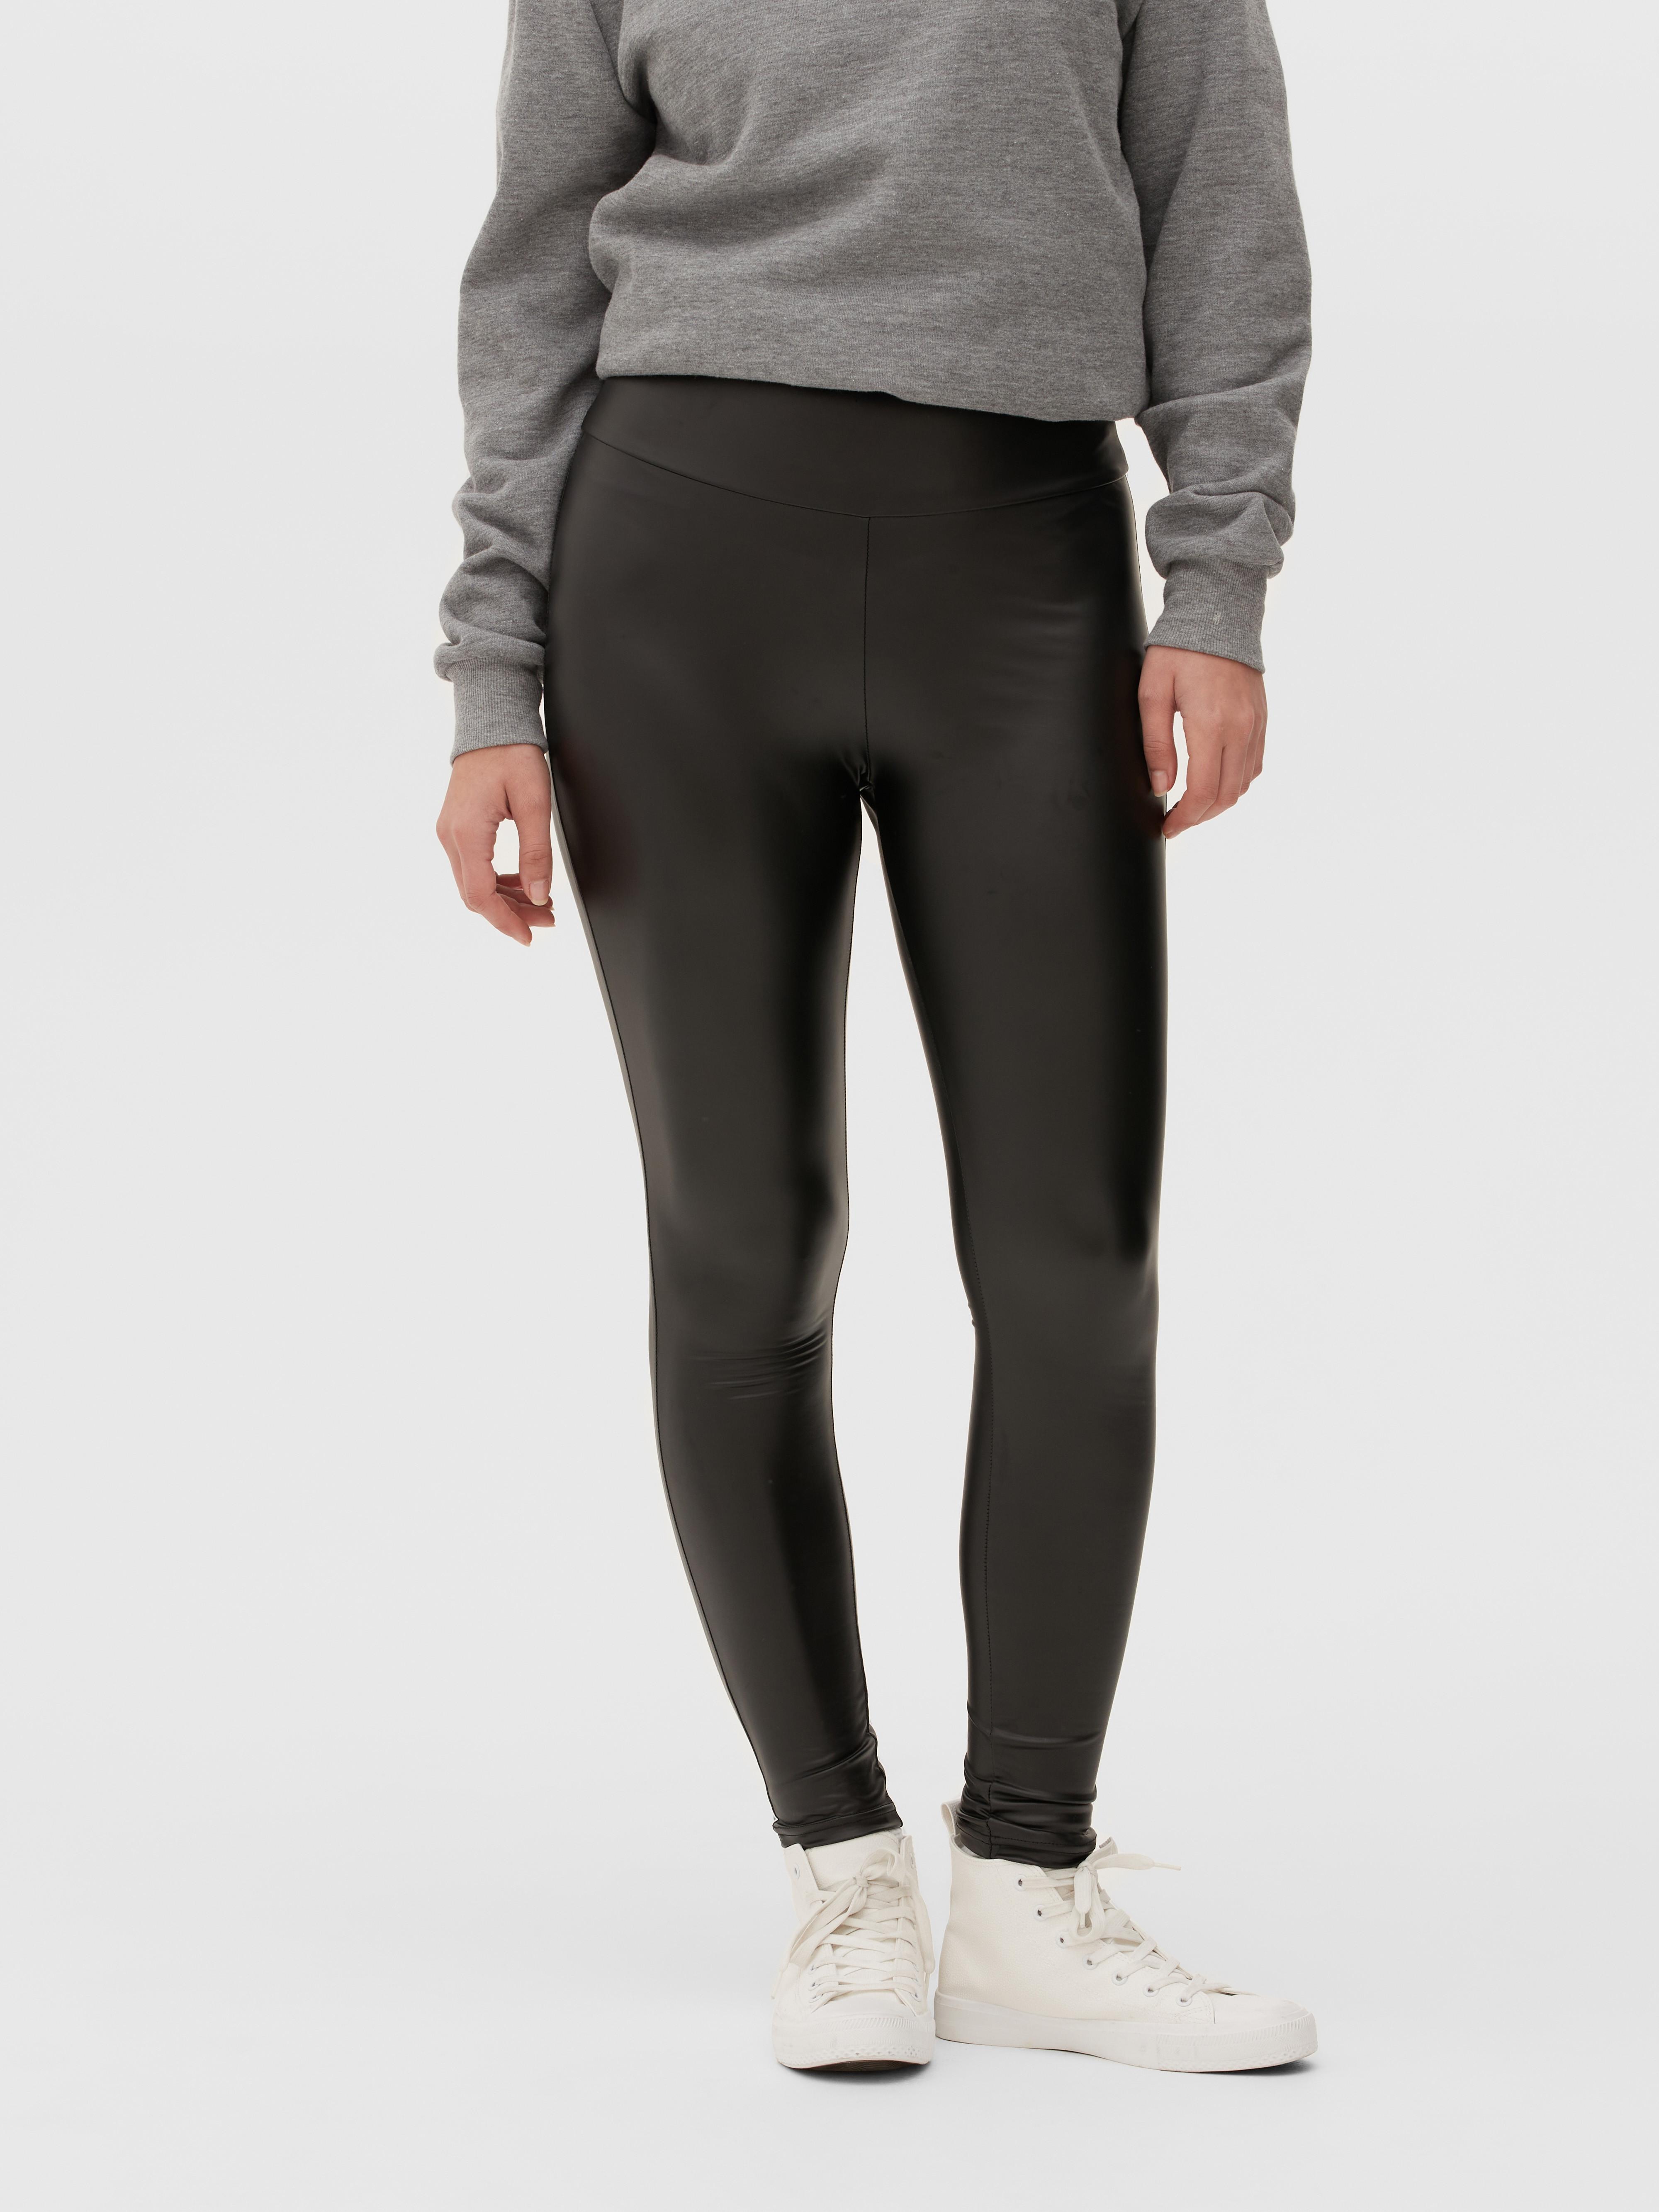 Primark black leggings size medium